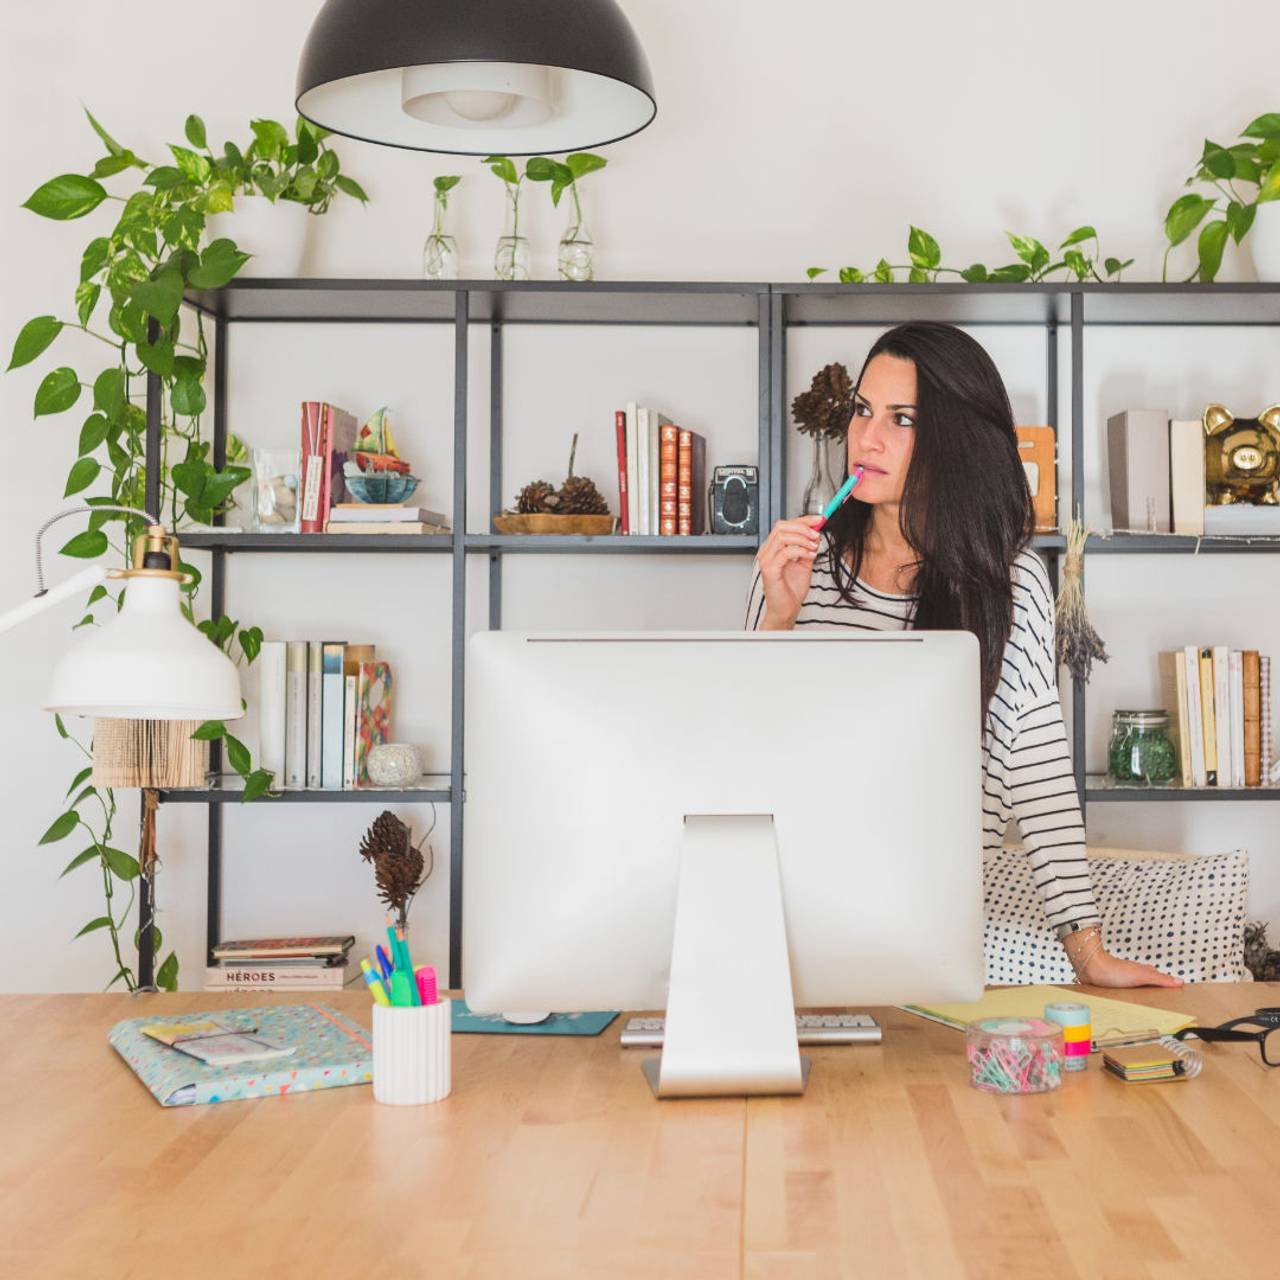 Mulher em um lugar com mesa de madeira com um computador branco e prateleira com livros e plantas